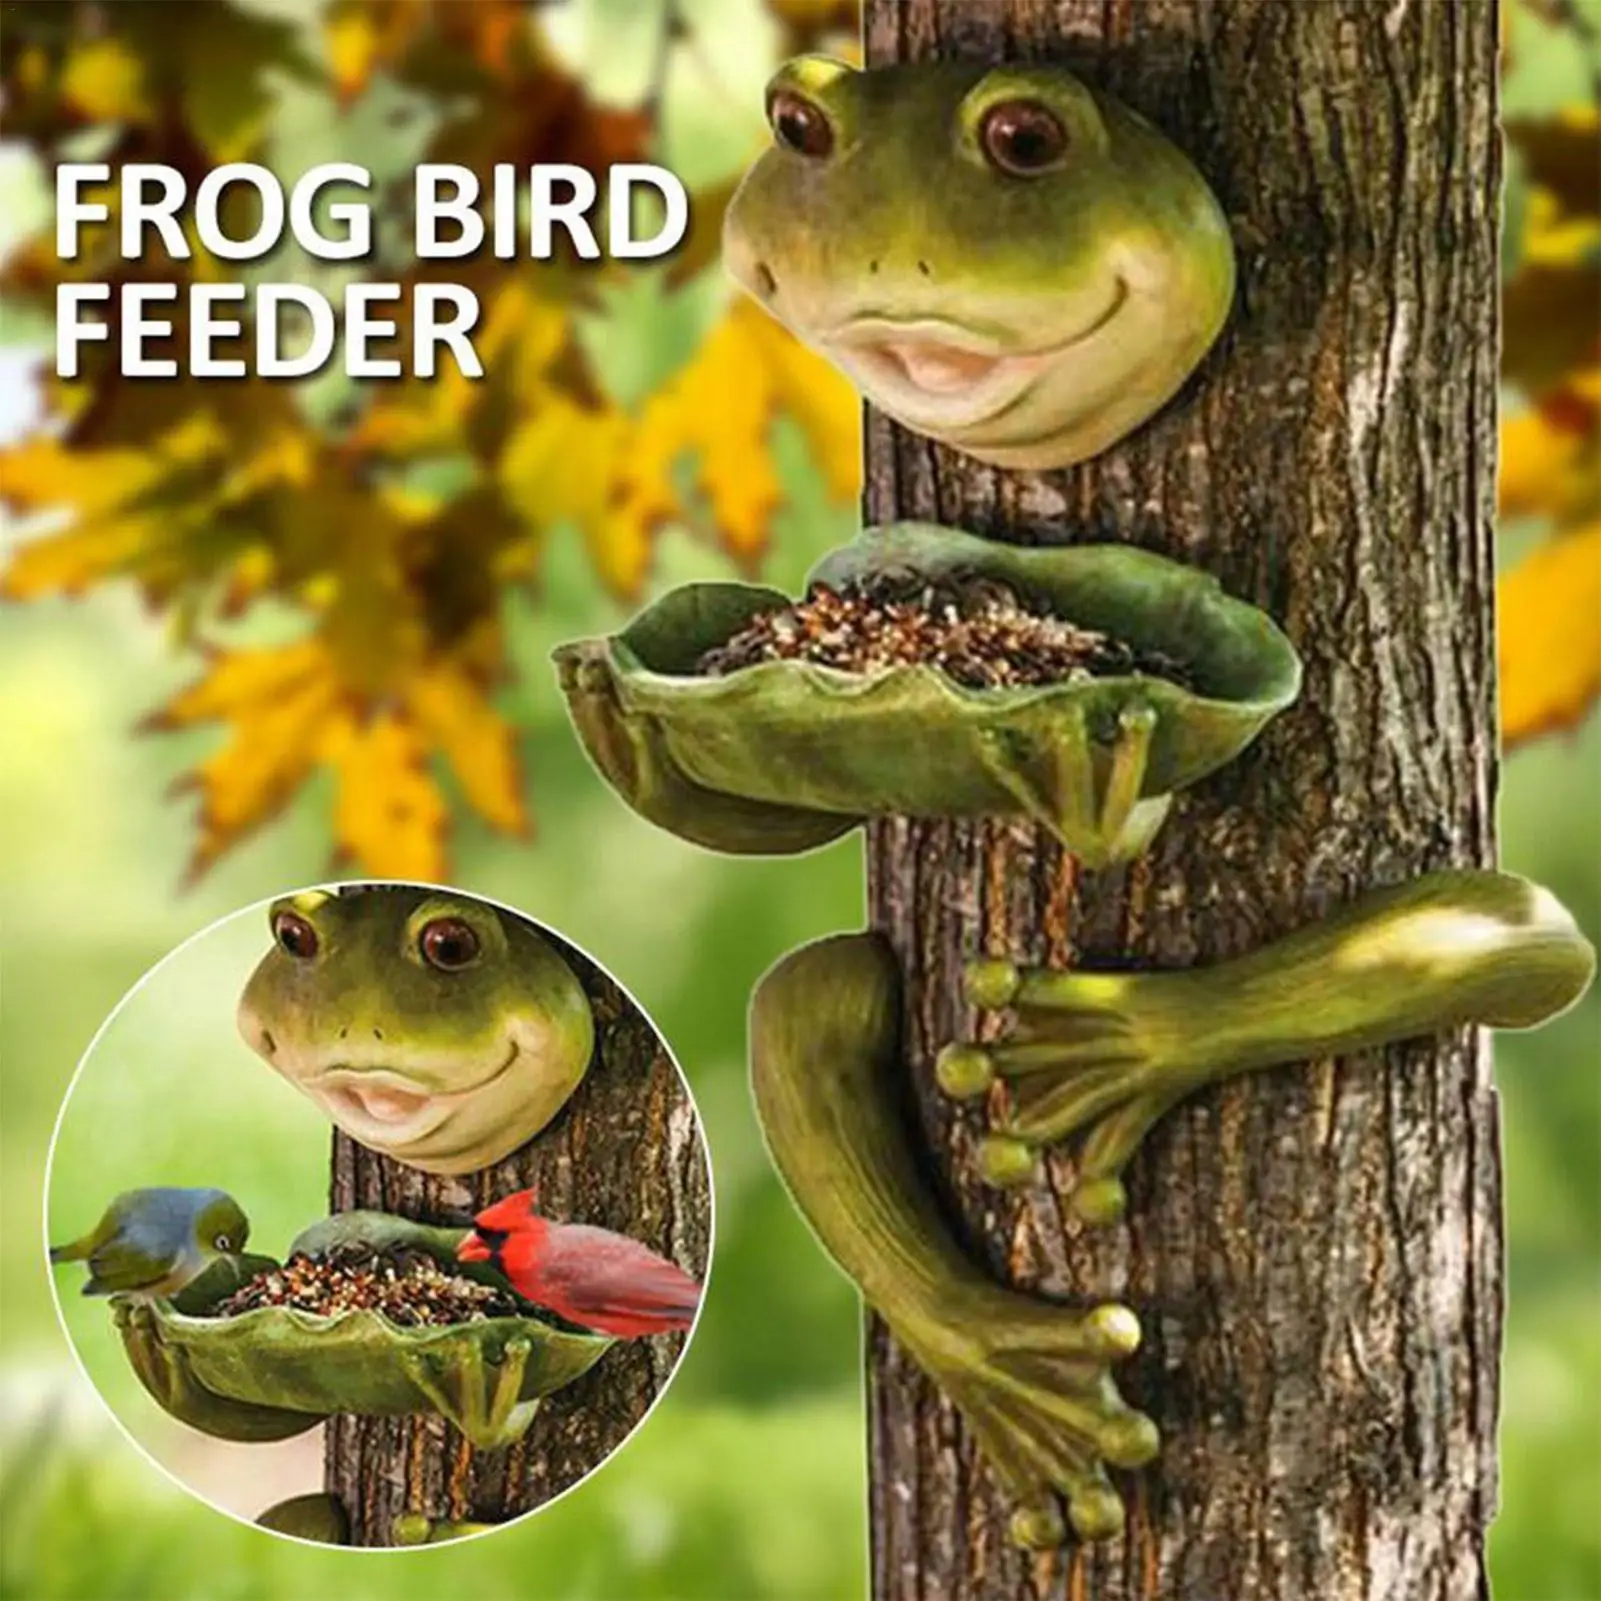 

Frog Bird Feeder Cute Outdoor Frog Shape Birds Feeding Plates Innovative Large Feeding Bowls for Garden Lawn Yard Decor